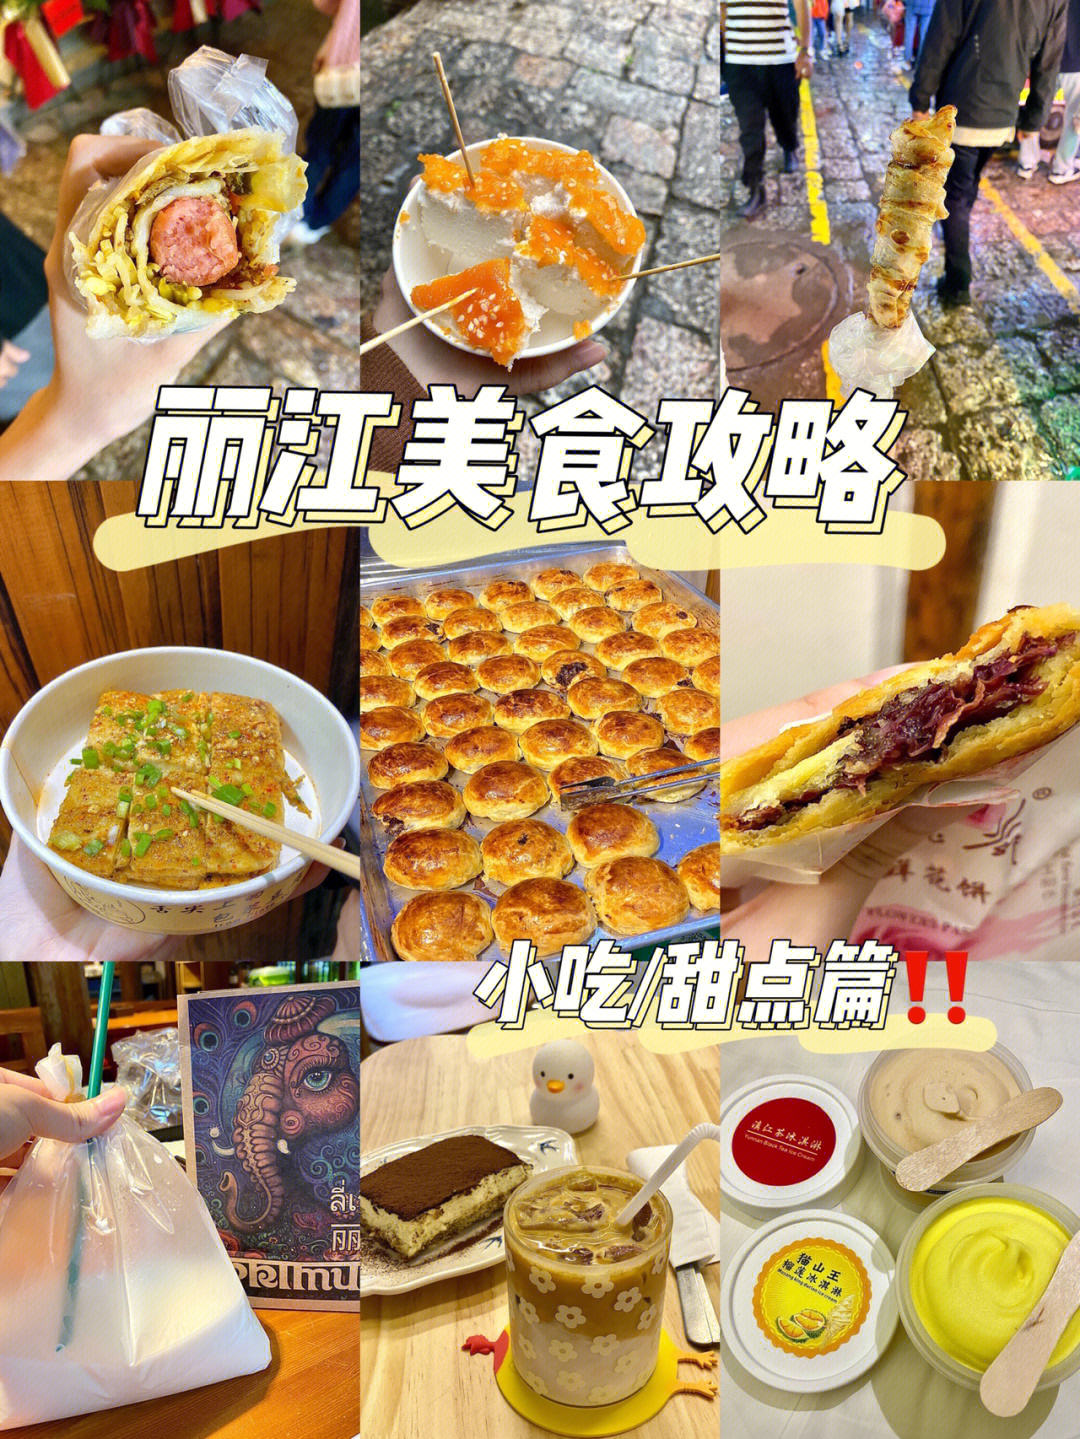 丽江美食排名前十图片